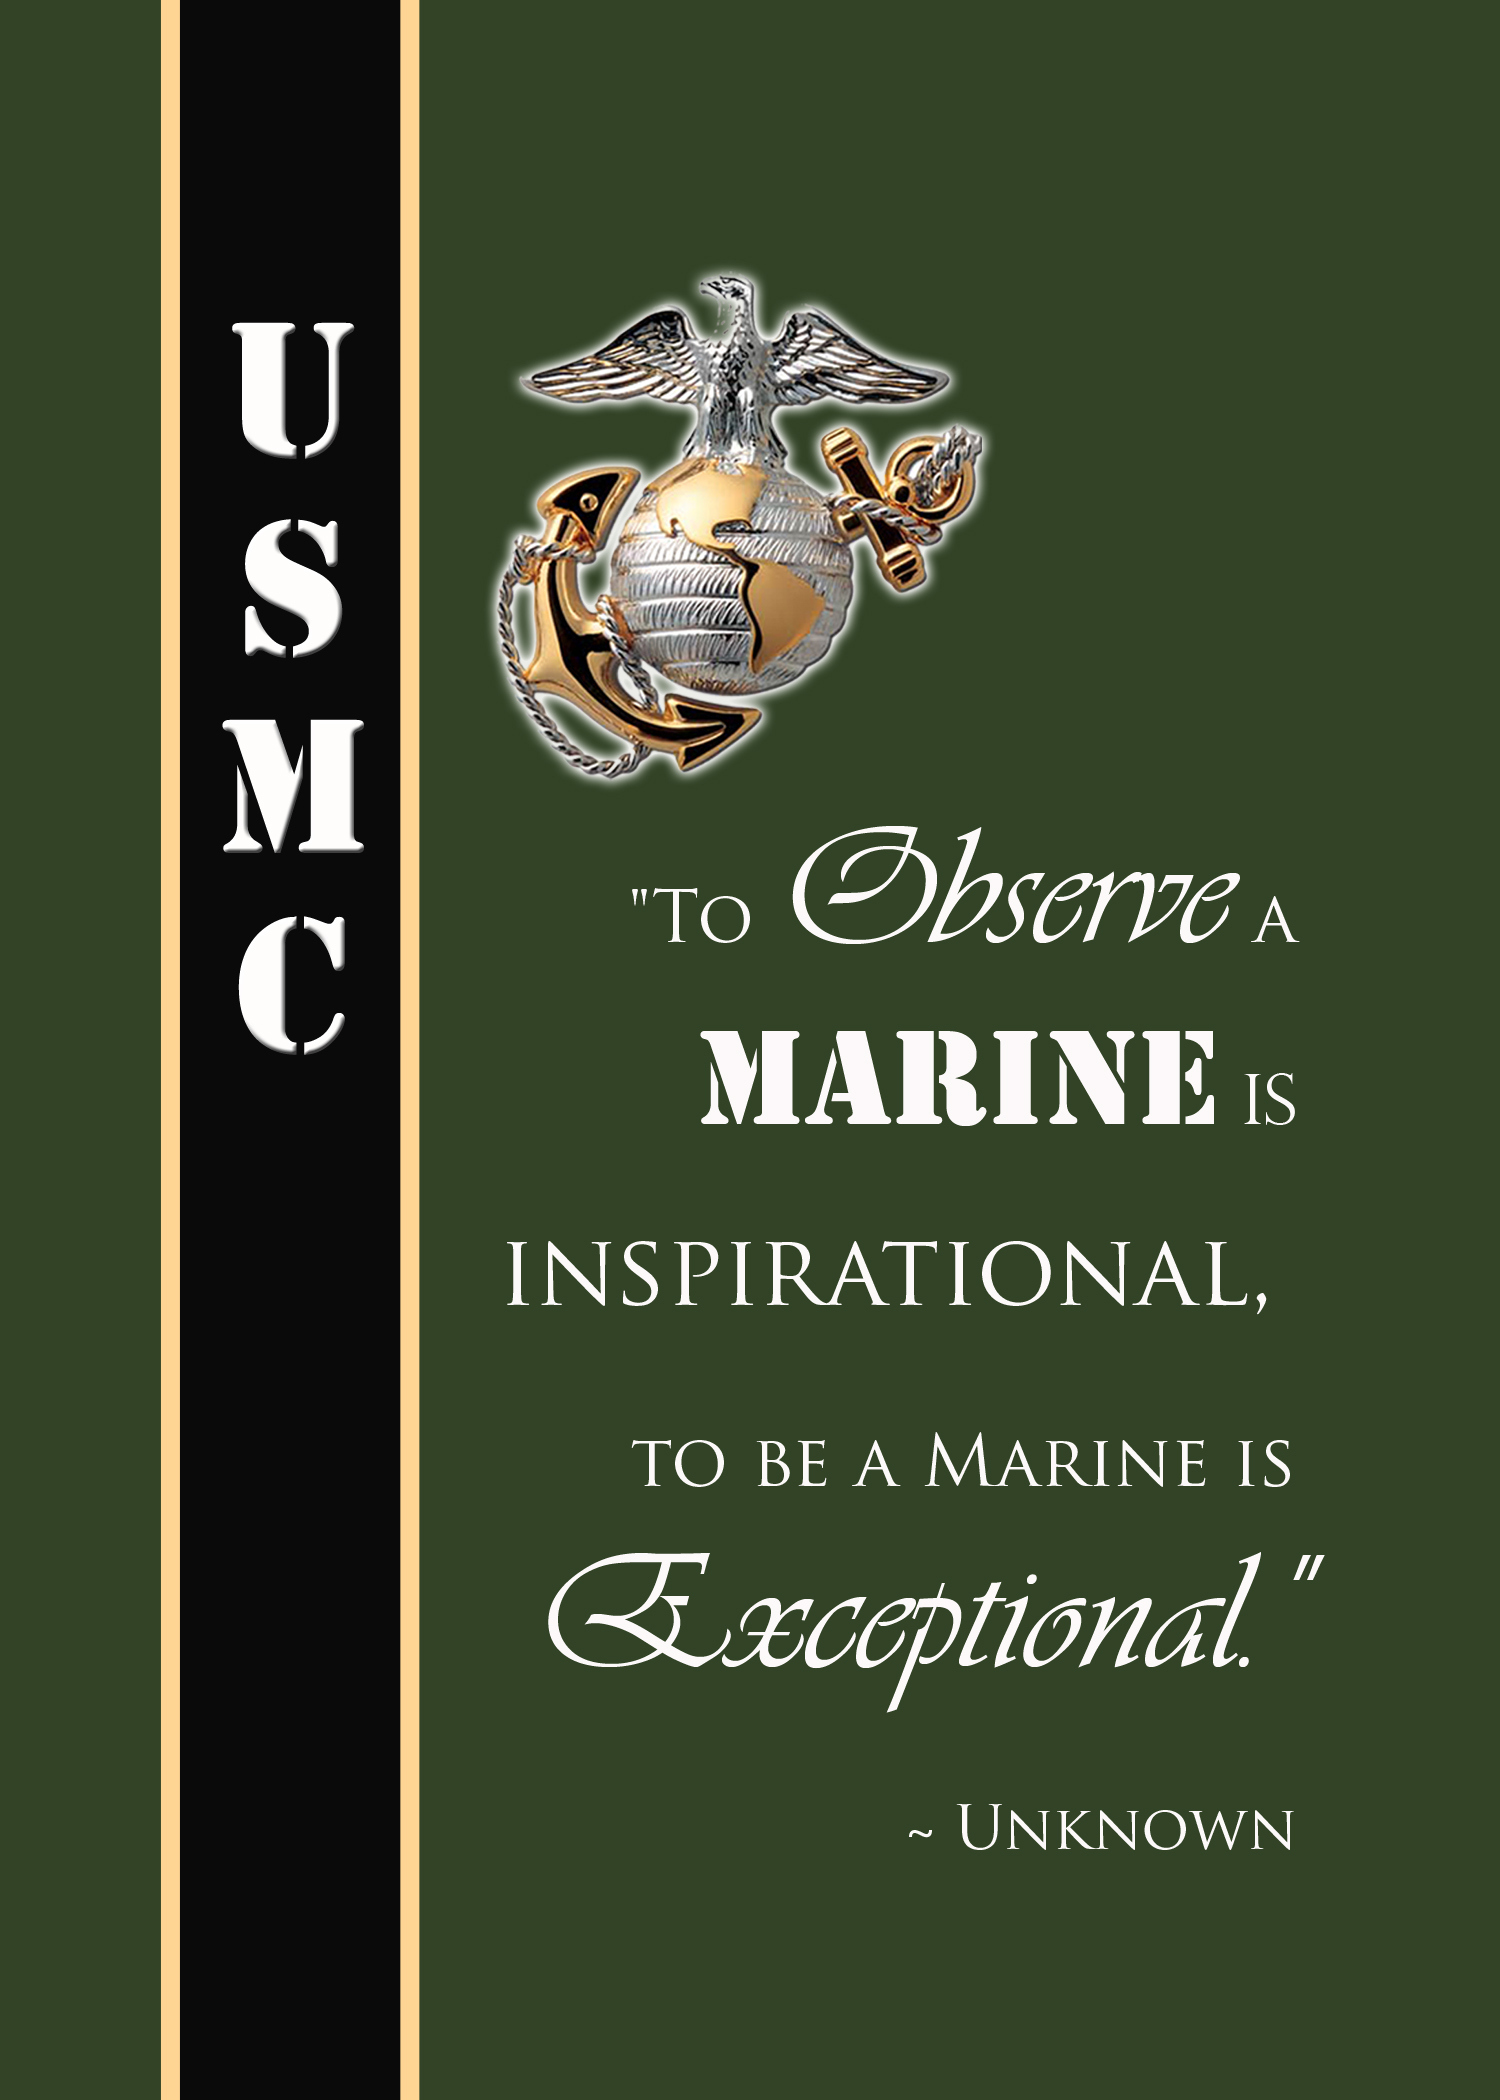 Marine Crucible Quotes. QuotesGram